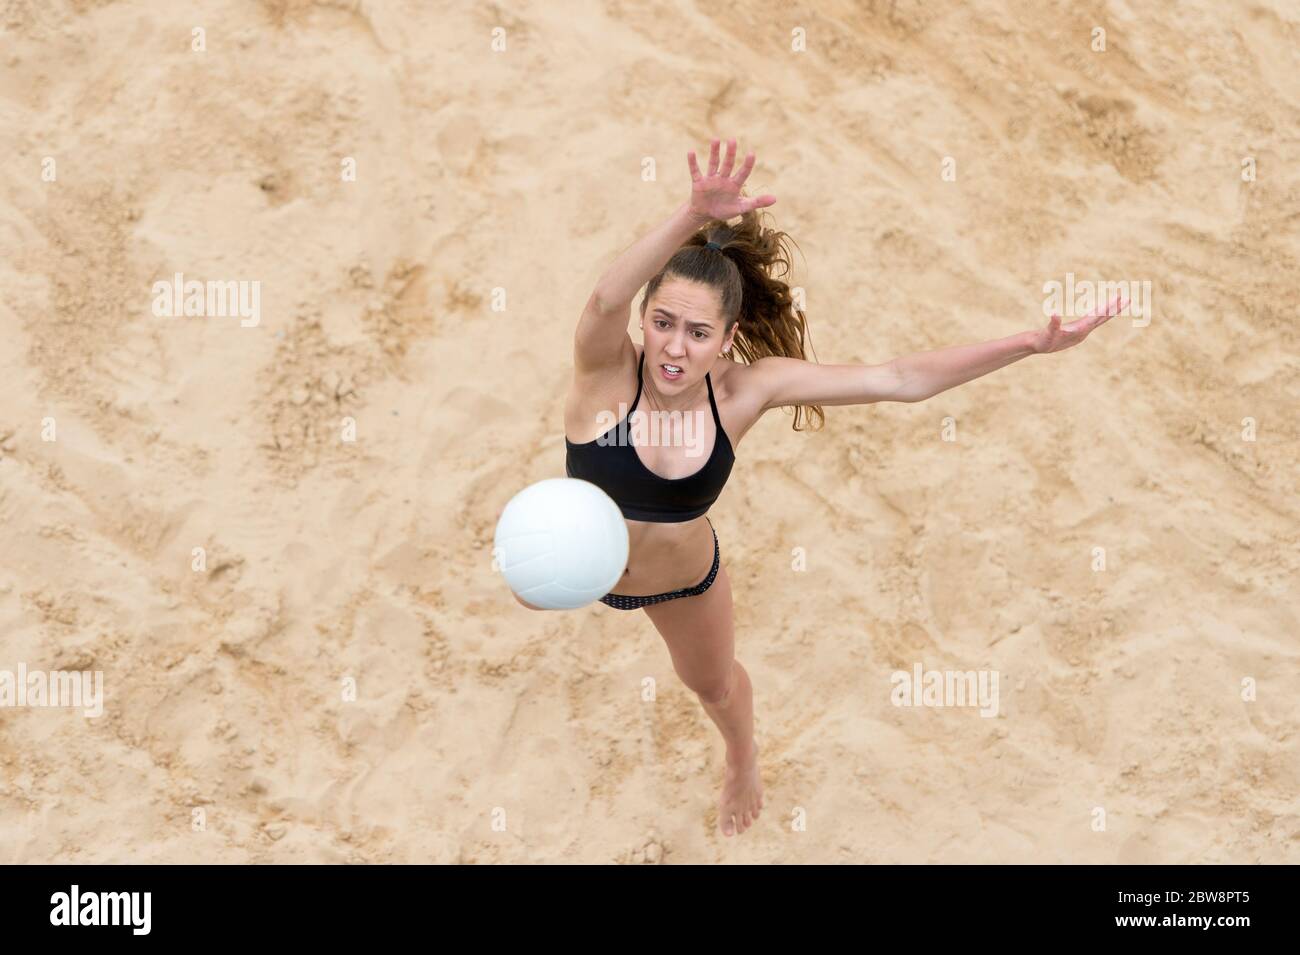 Jeune femme avec le ballon blanc jouant au volley-ball sur la plage. Vacances d'été et concept sportif Banque D'Images